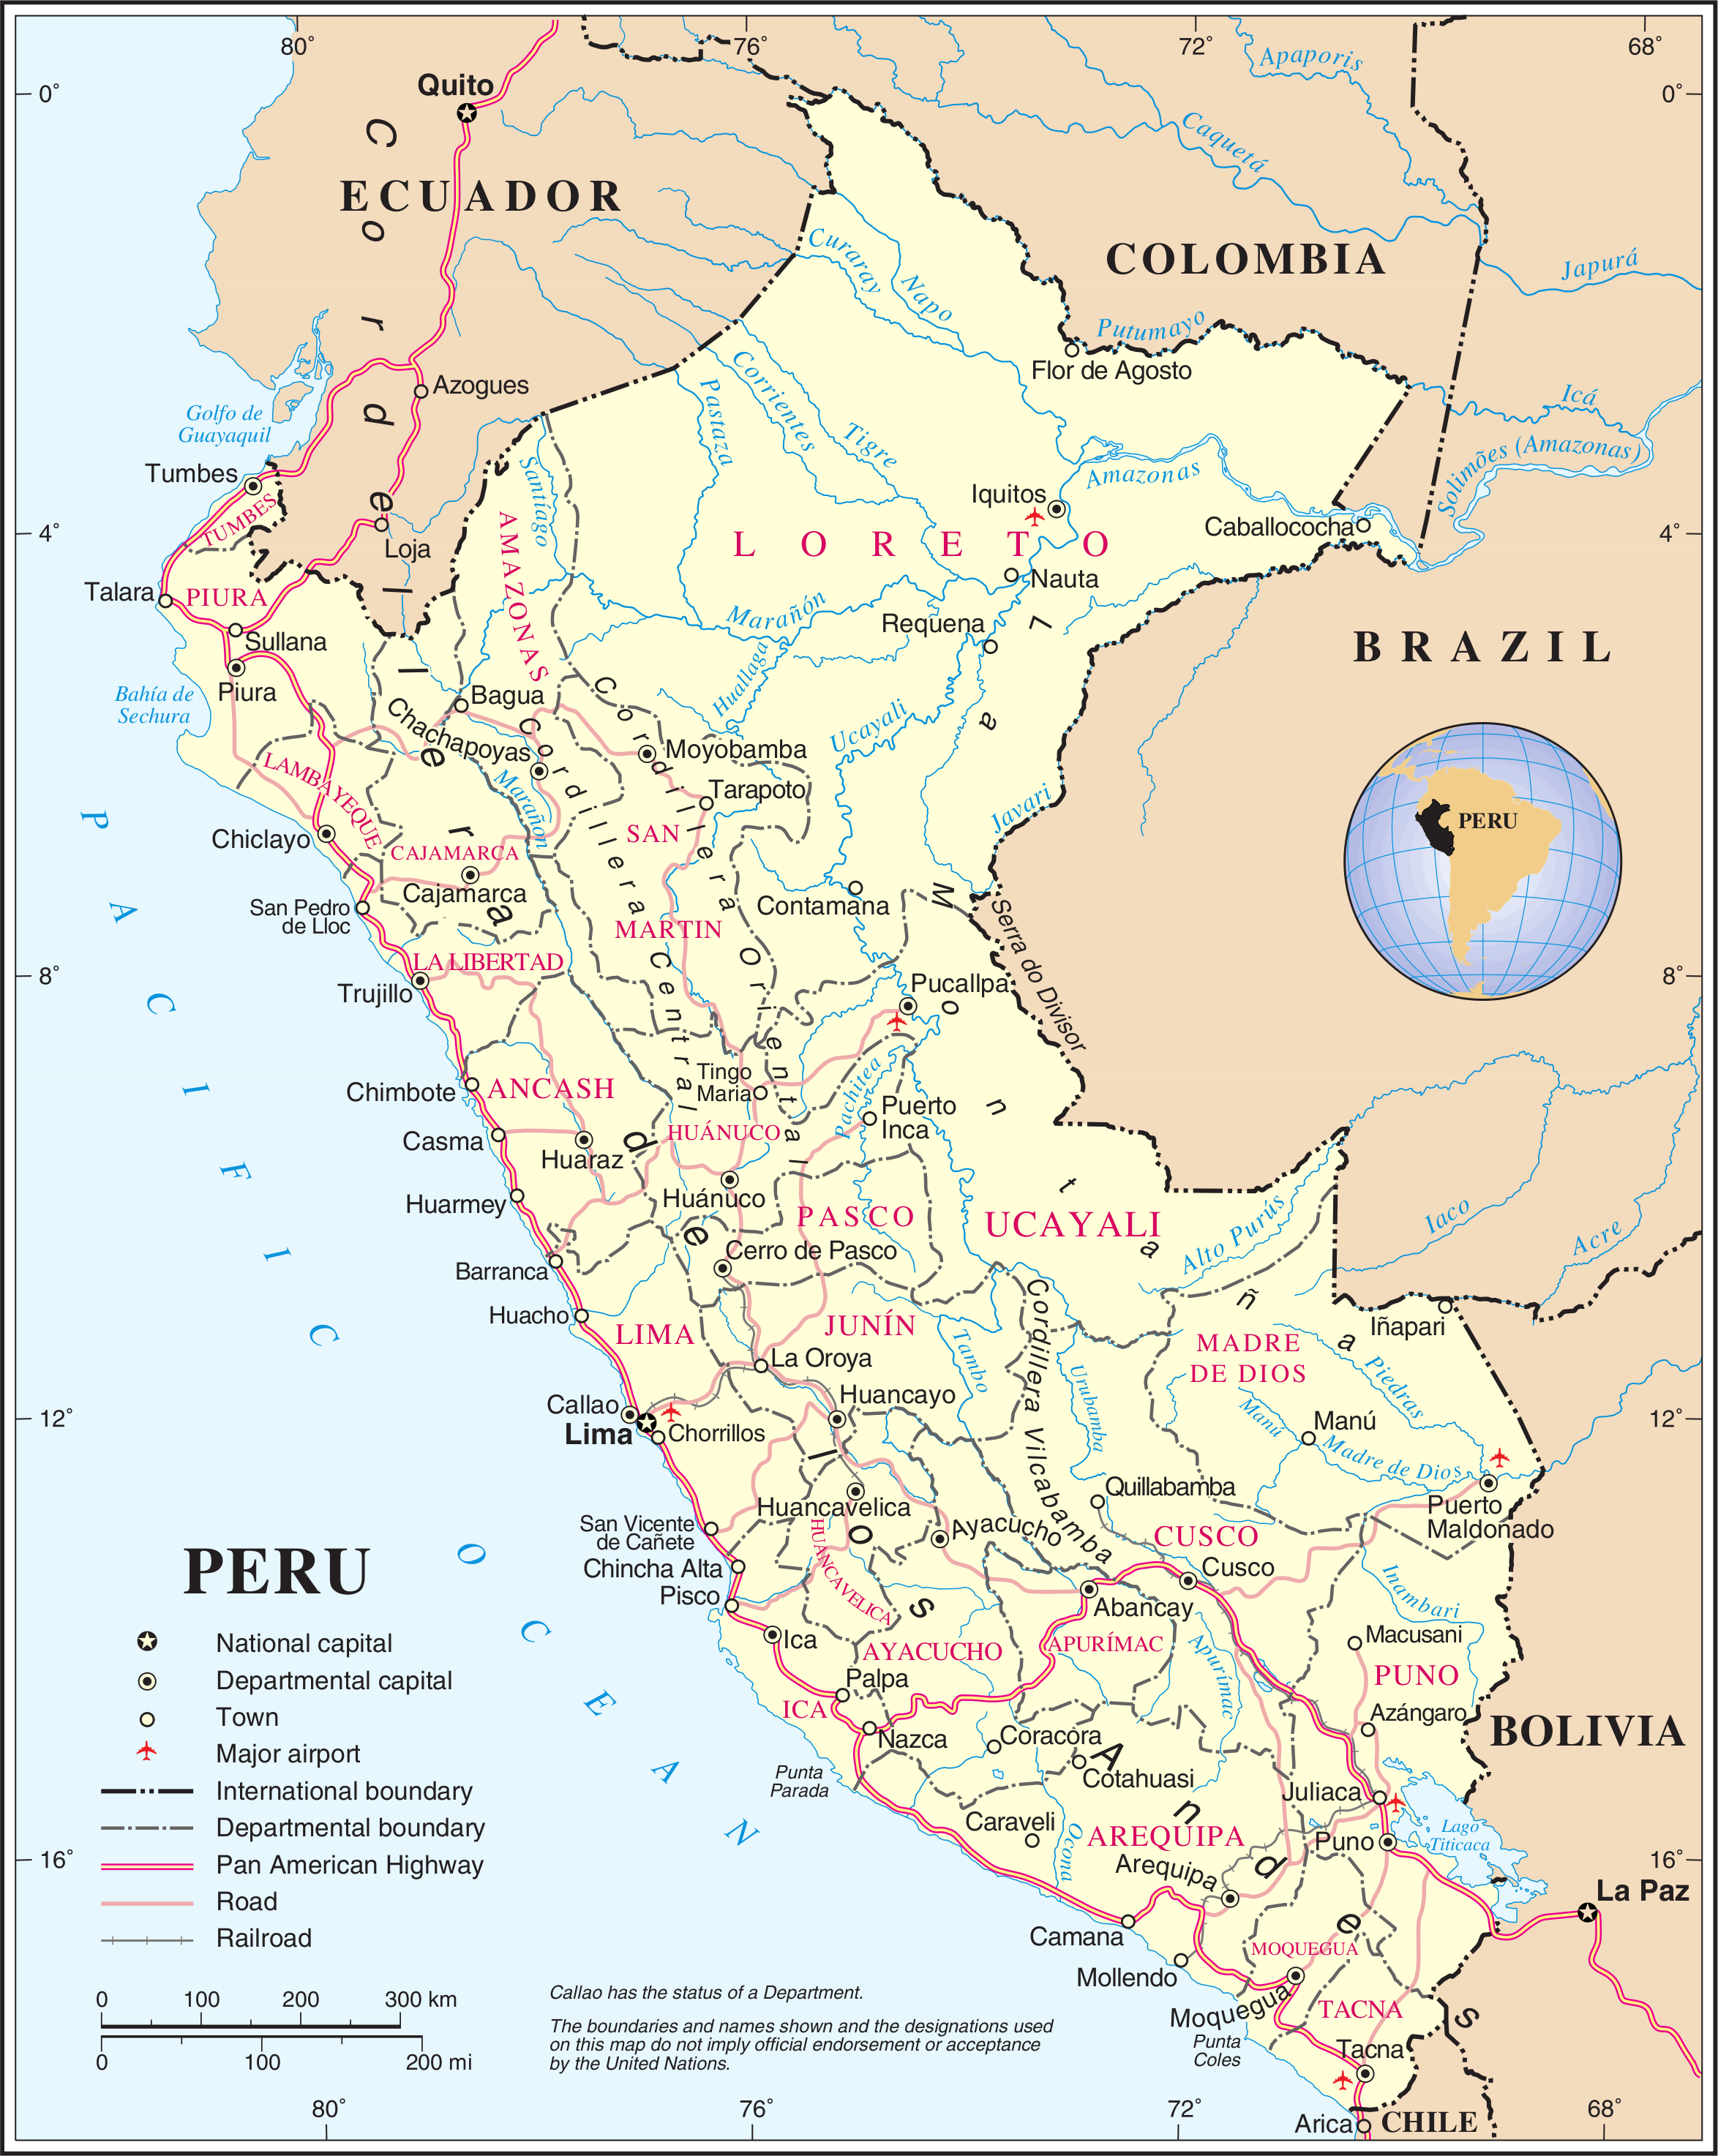 Pérou - administrative • Carte • PopulationData.net